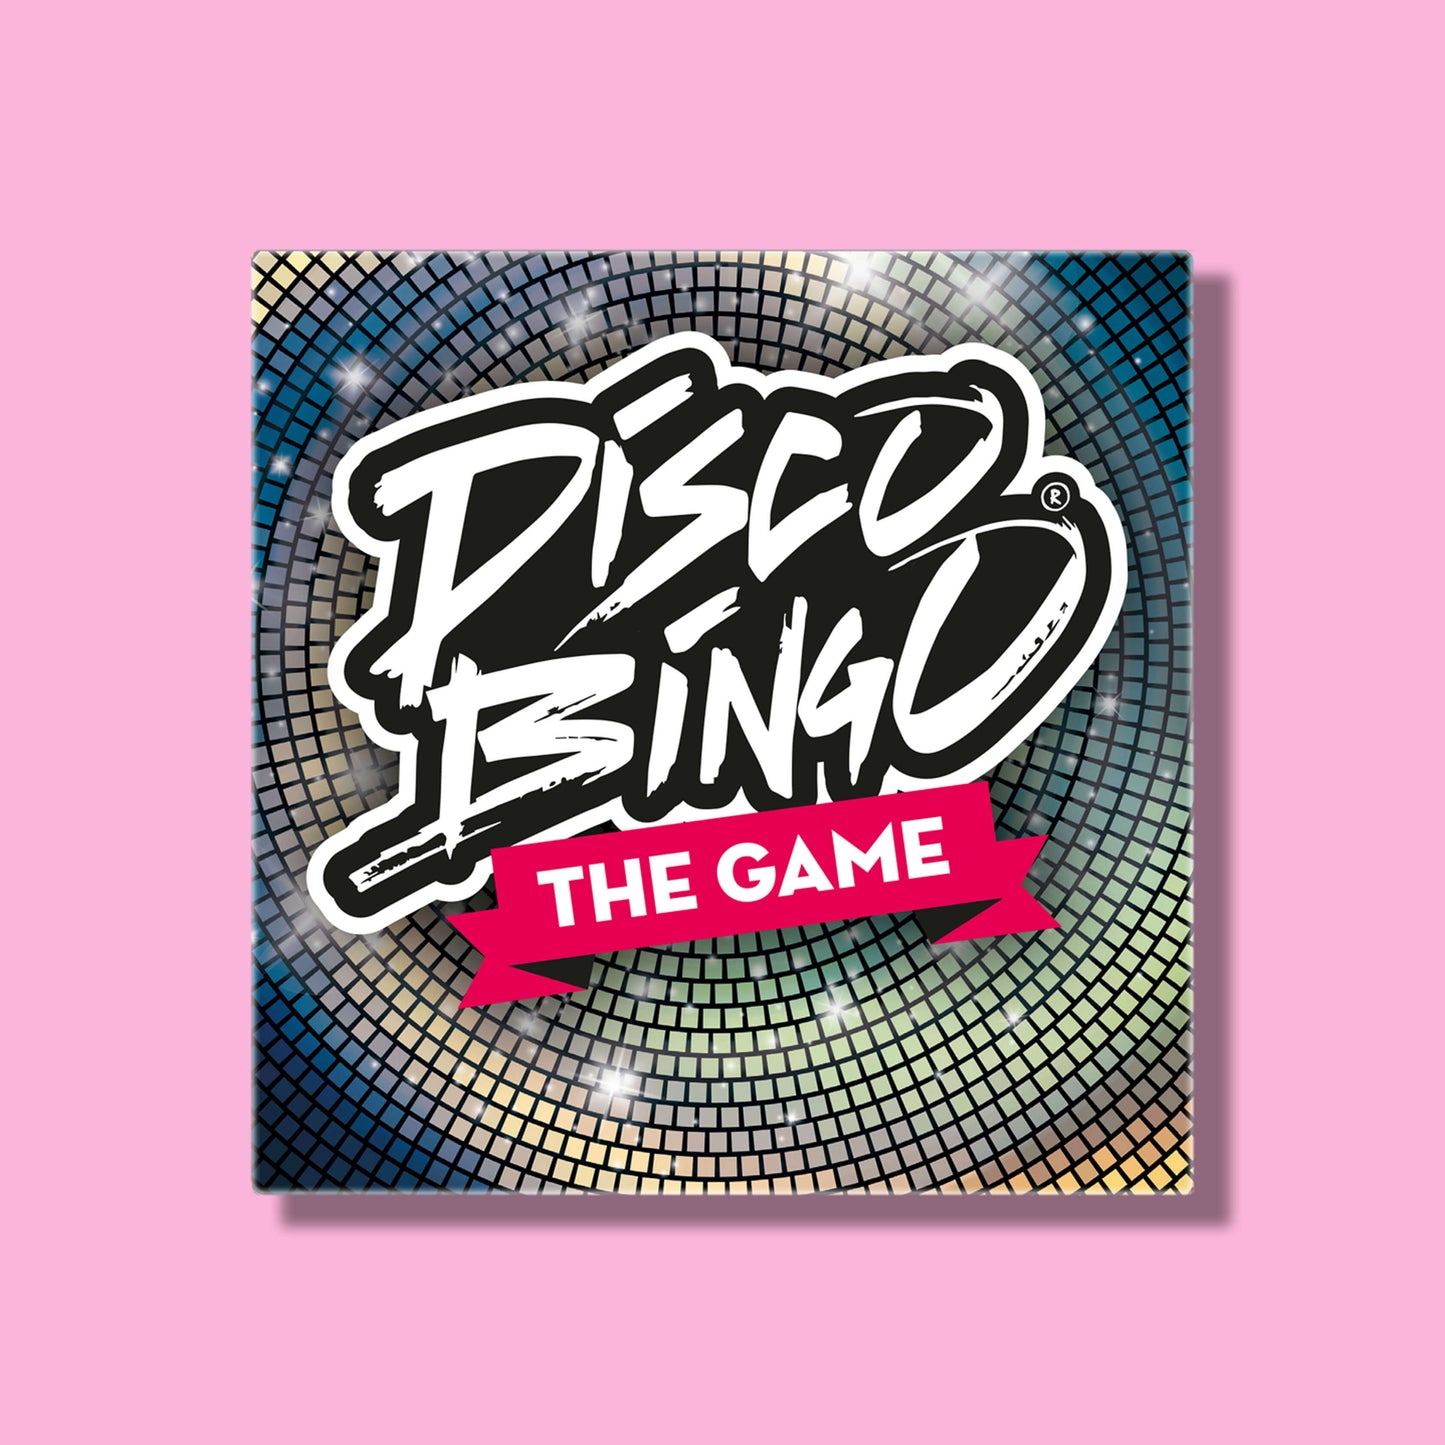 Disco Bingo The Songfestival Game Box